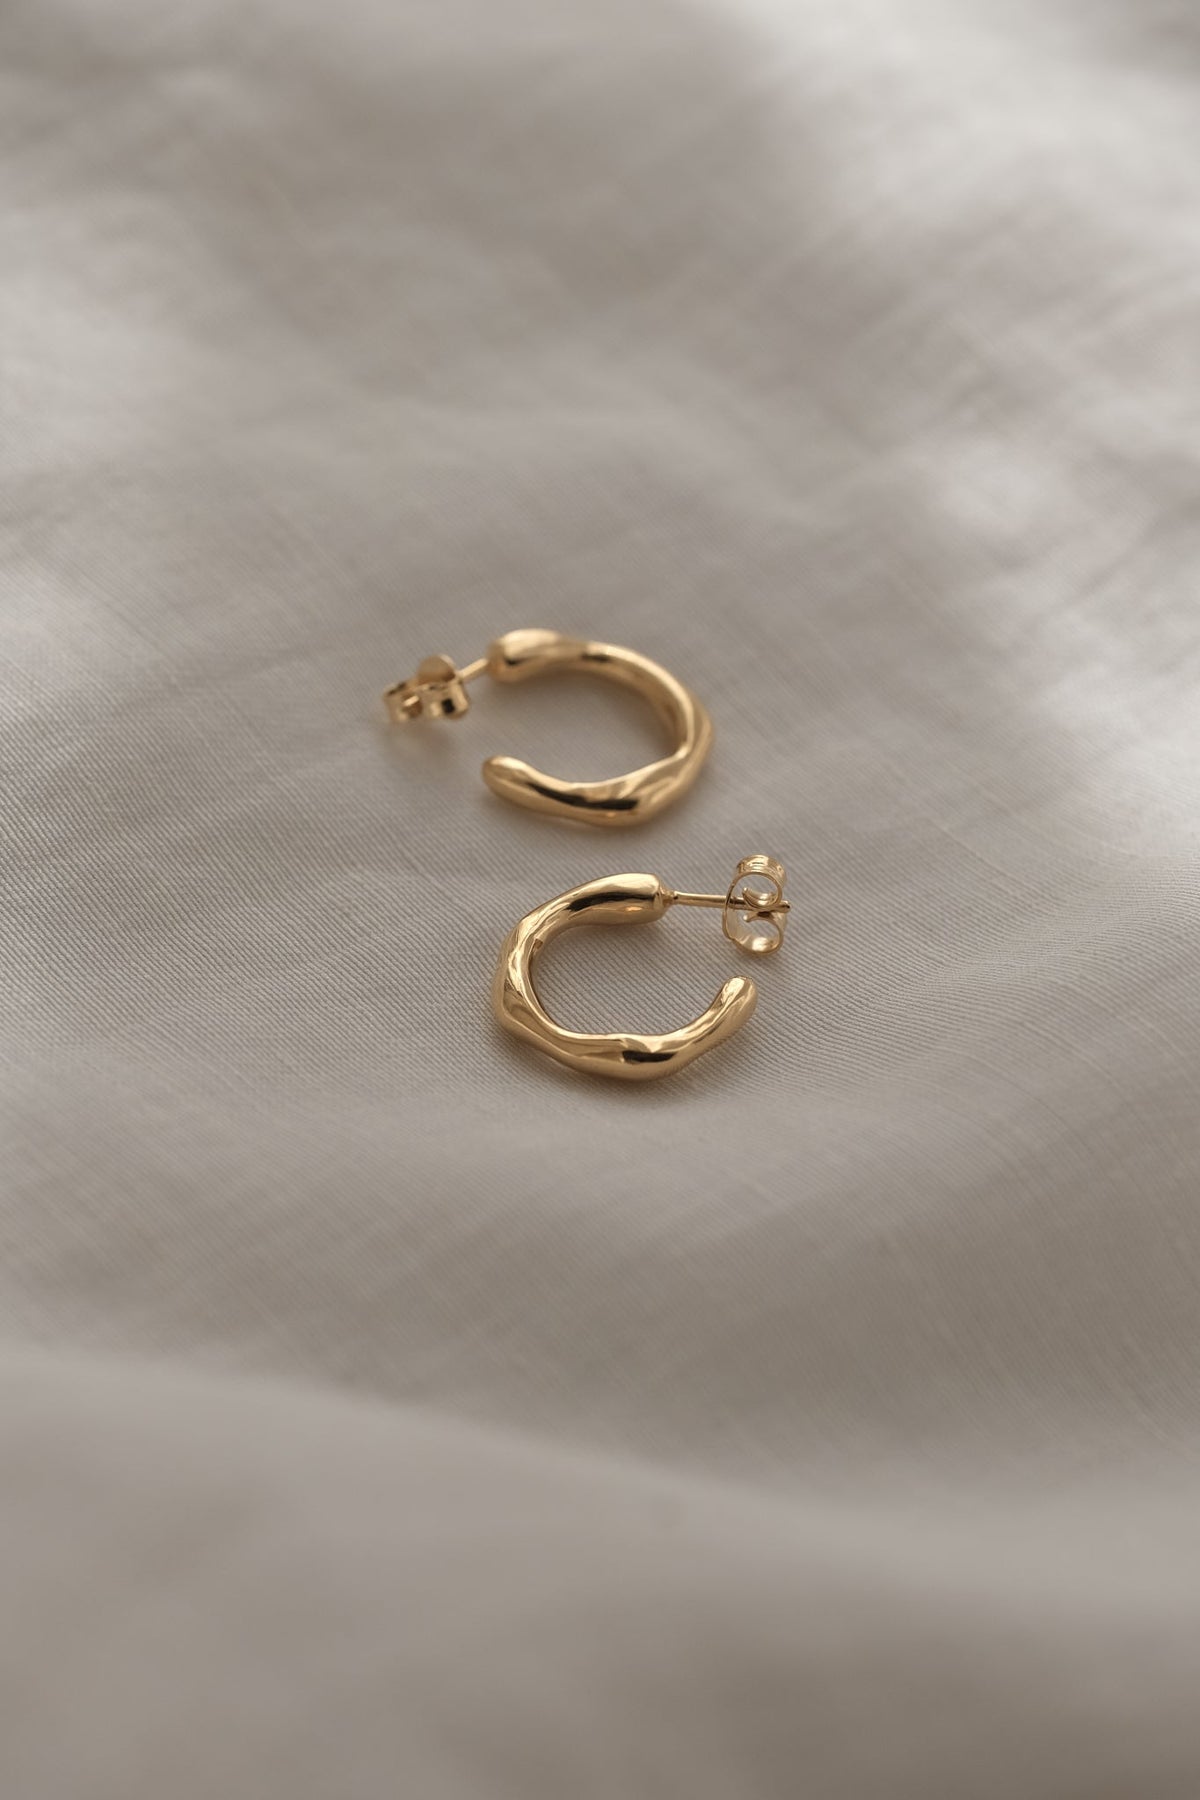 LUMI small earrings 18k gold